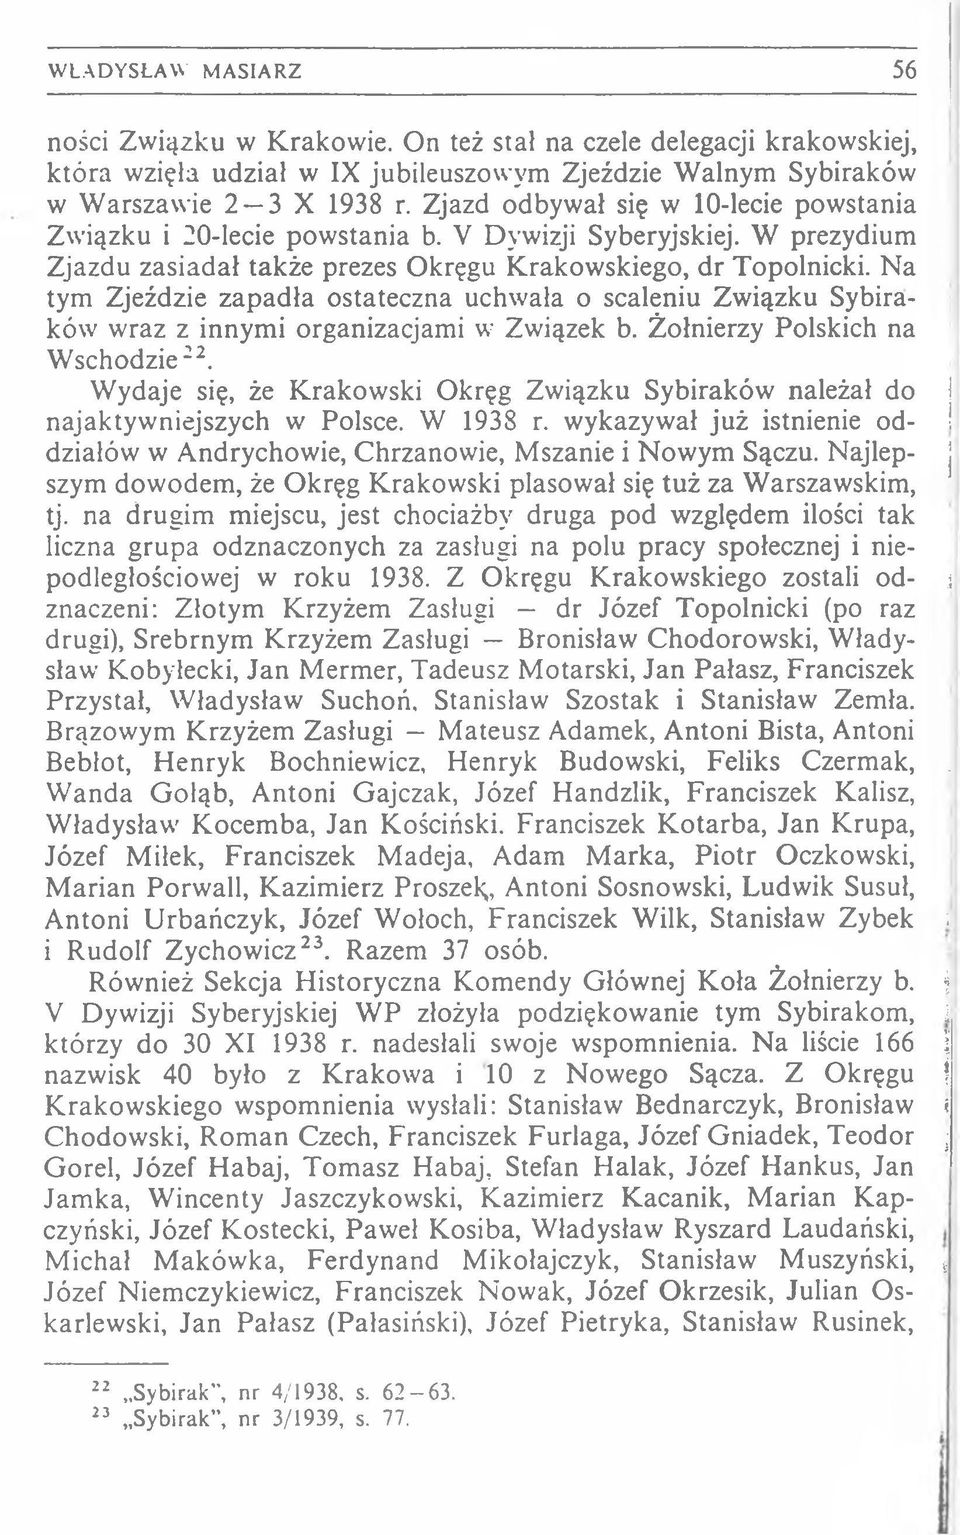 N a tym Zjeździe zap a d ła ostateczna uchw ała o scaleniu Zw iązku Sybiraków wraz z innym i organizacjami w Związek b. Żołnierzy Polskich na W schodzie22.